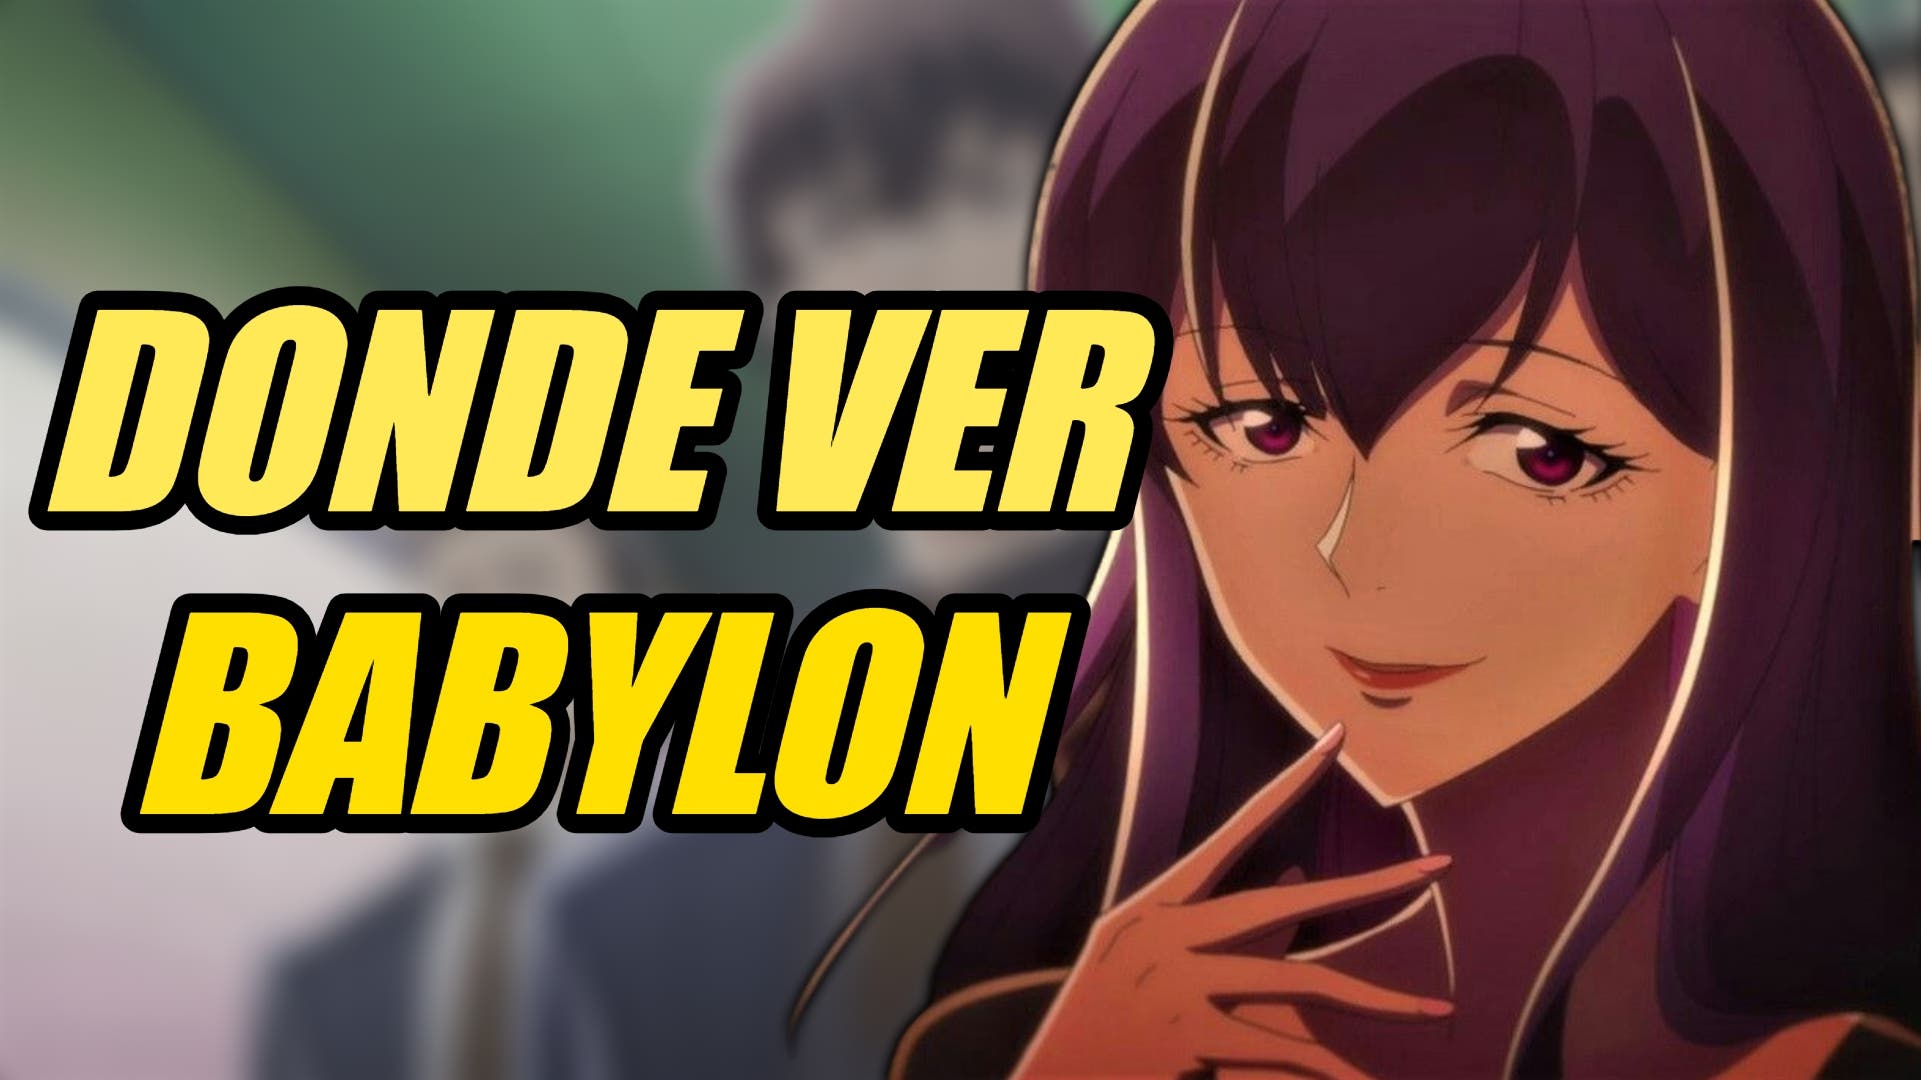 Babylon Trailer - Preview for the Anime Fall Season 2019 - YouTube-as247.edu.vn